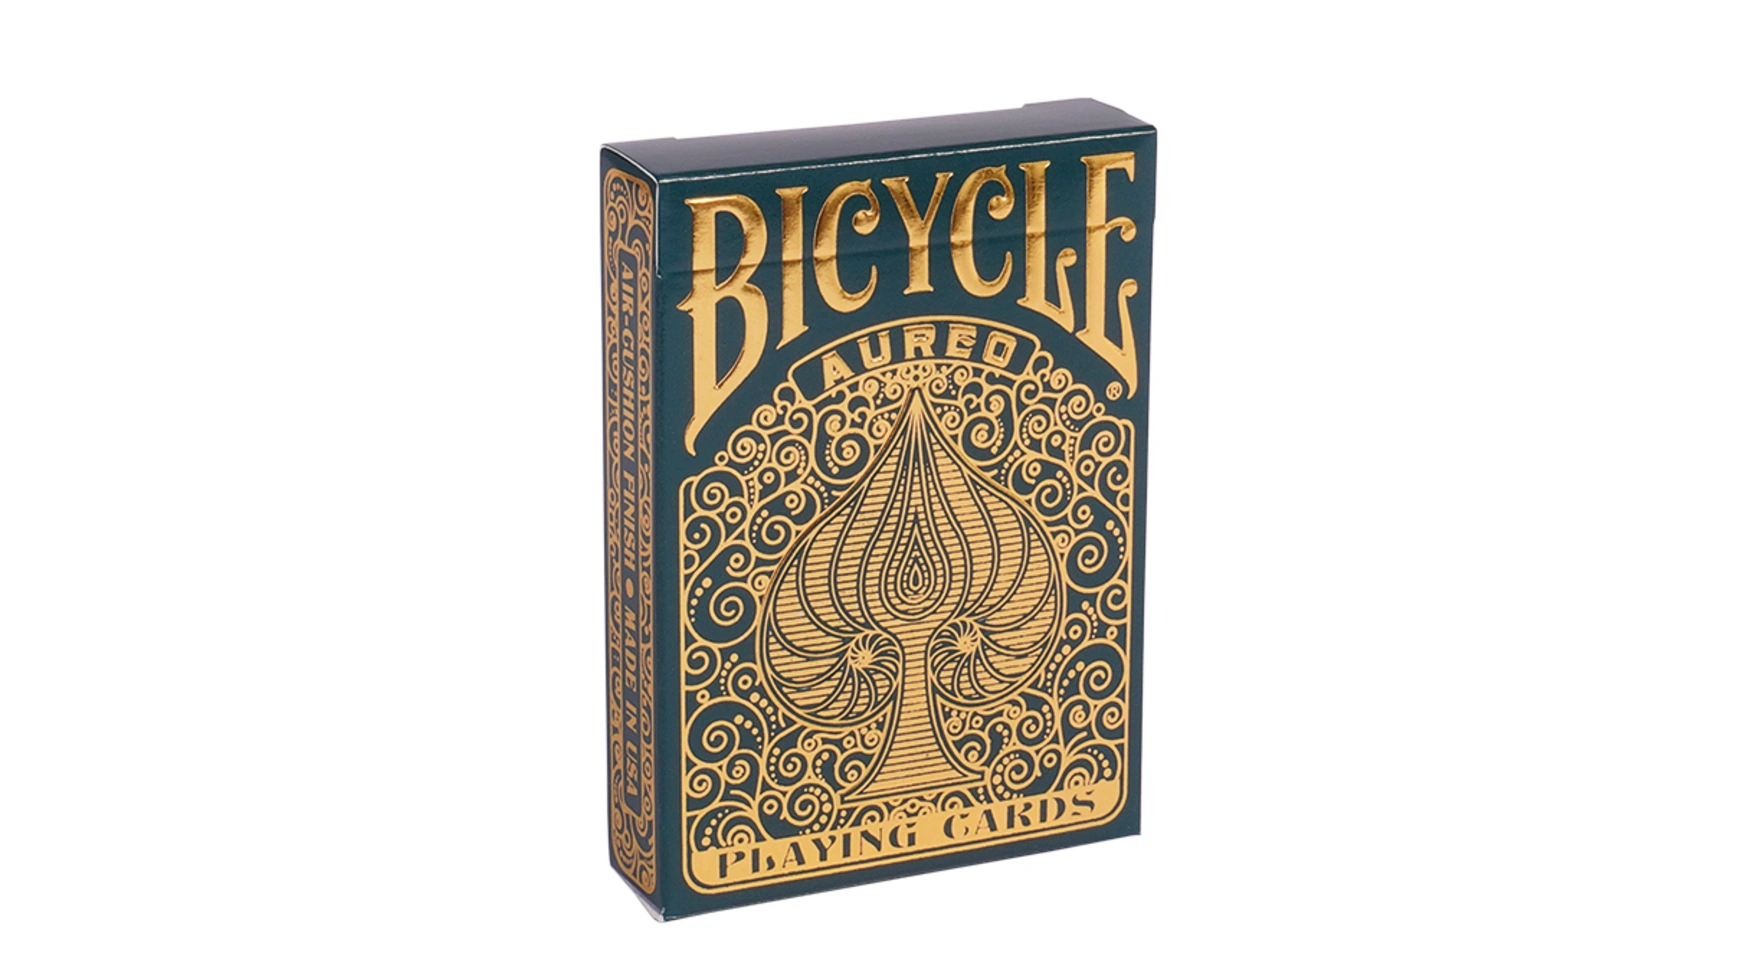 Bicycle Aureo, игральные карты uspcc игральные карты bicycle pro poker peek uspcc сша 54 карты